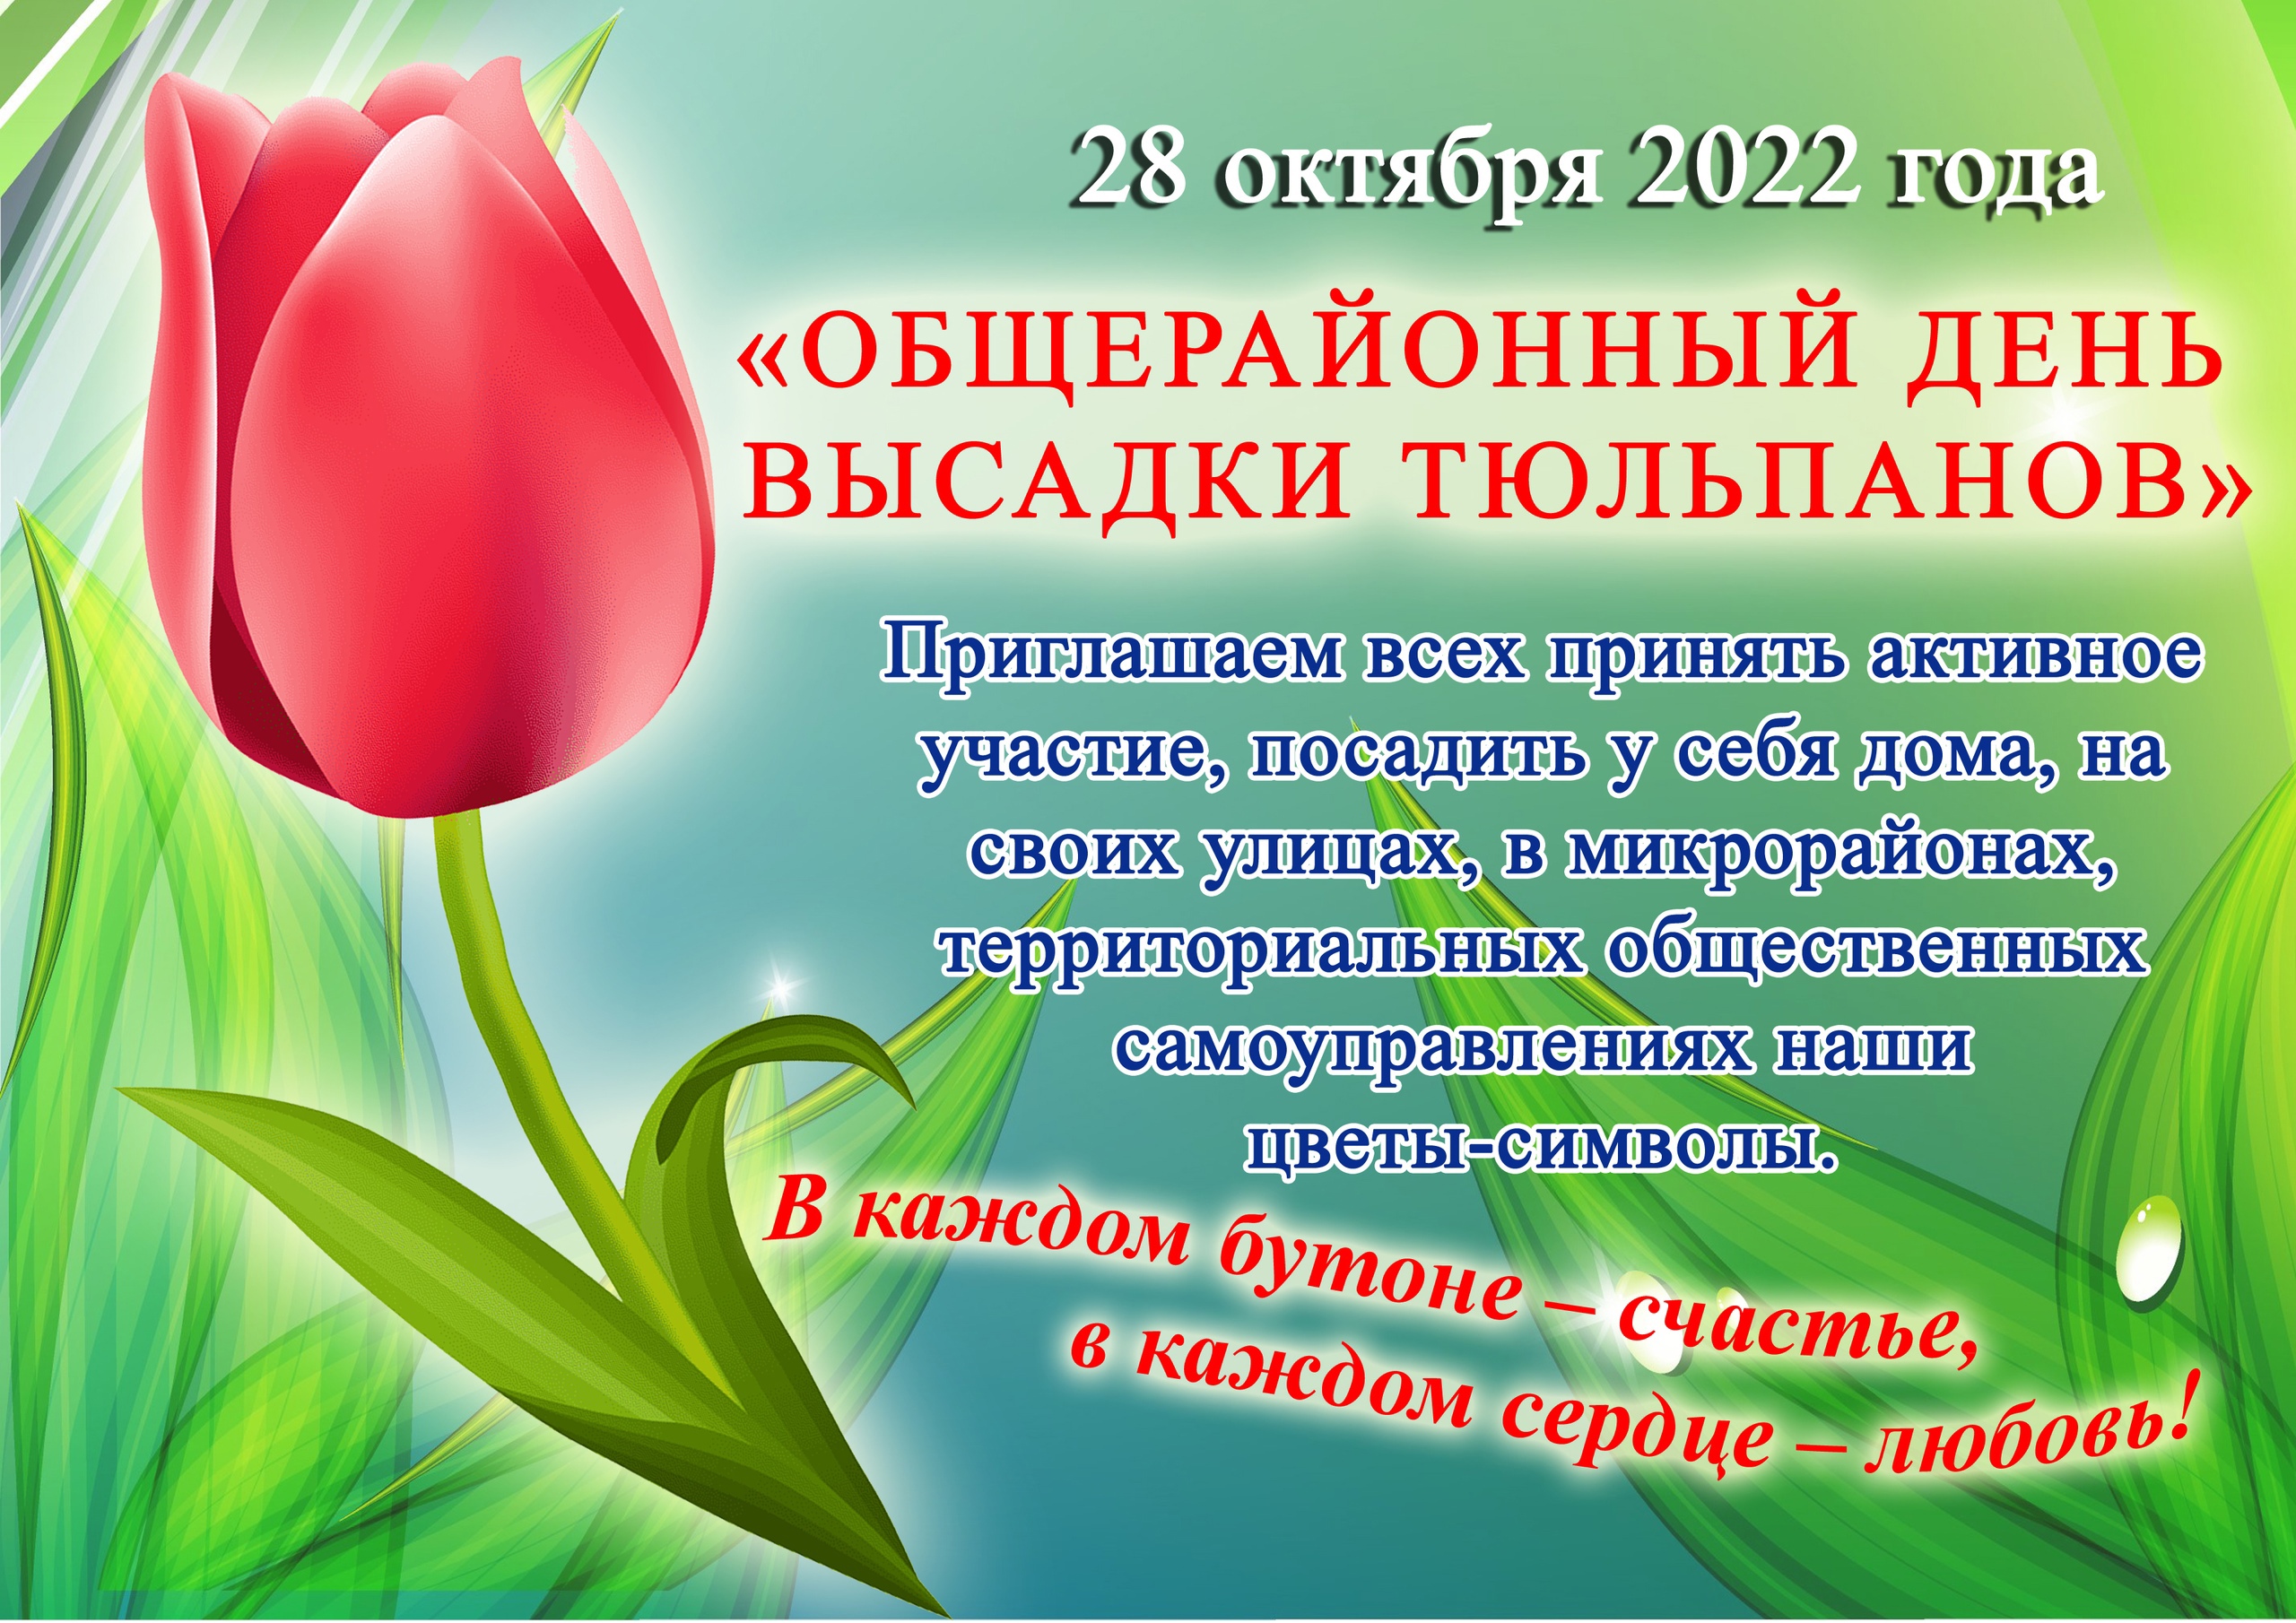 28 октября 2022 года объявляется общерайонный День посадки тюльпанов.